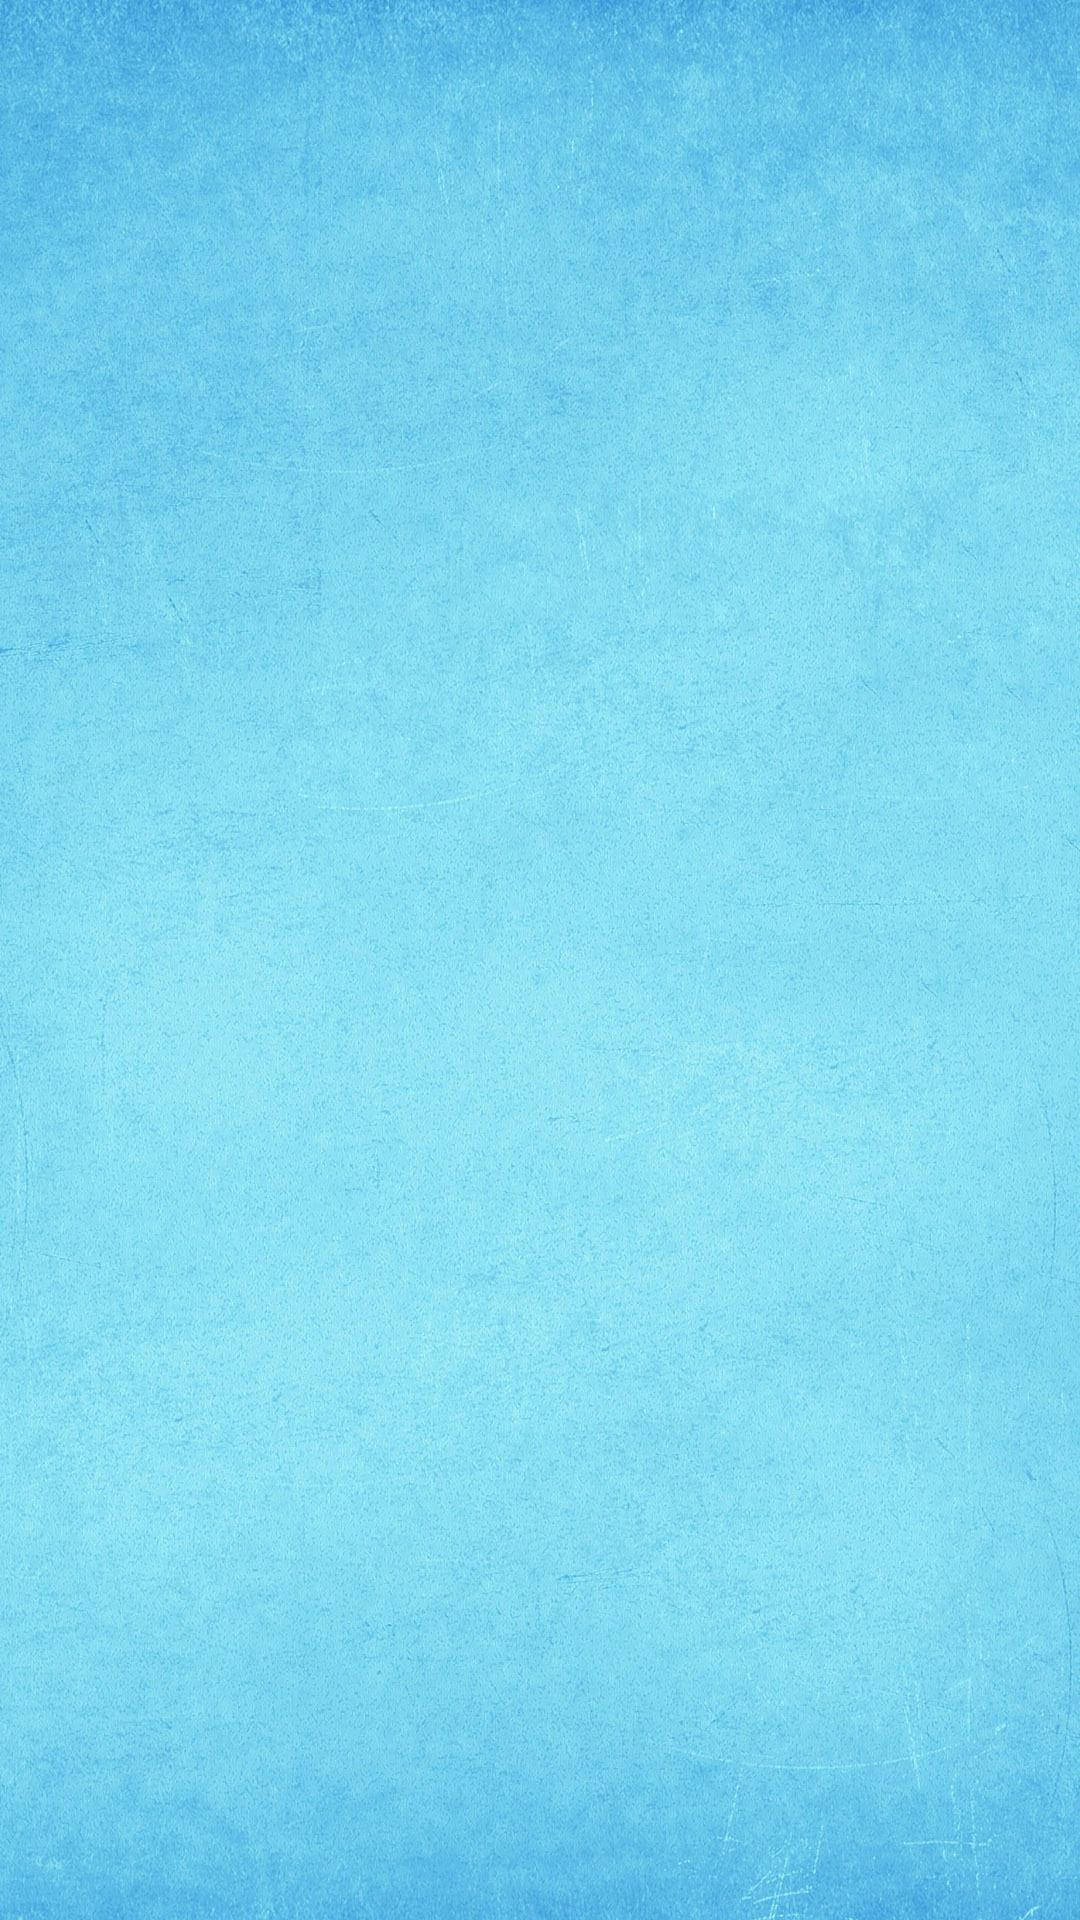 Textured Light Blue Phone Wallpaper